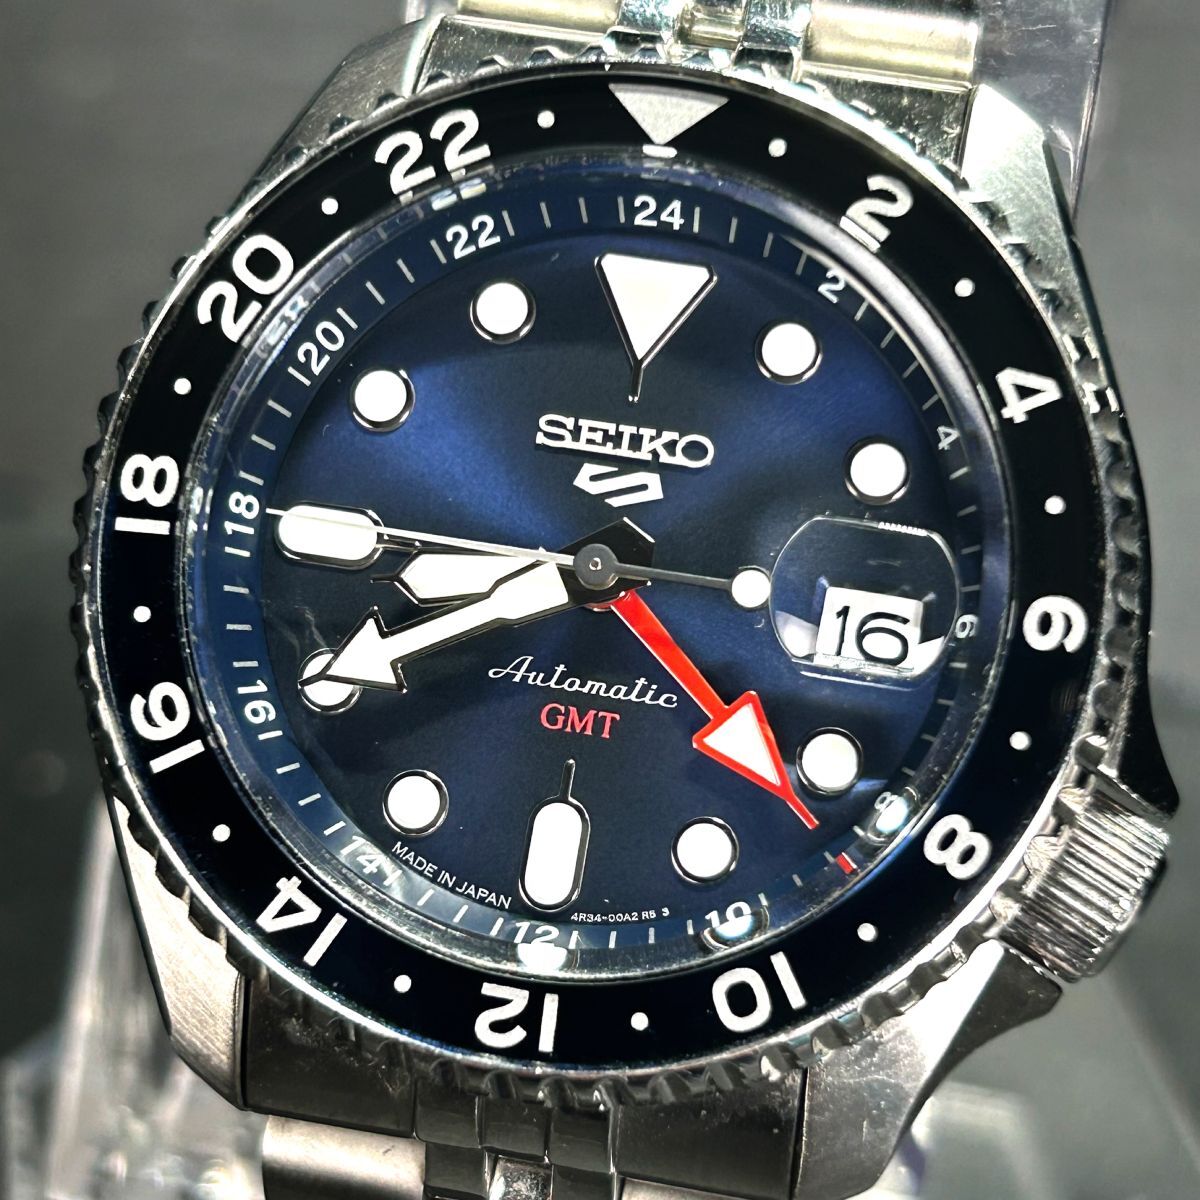 流通限定モデル 美品 EIKO セイコー セイコー5 スポーツ GMT SBSC003 腕時計 自動巻き メカニカル アナログ シースルーバック 回転ベゼルの画像2